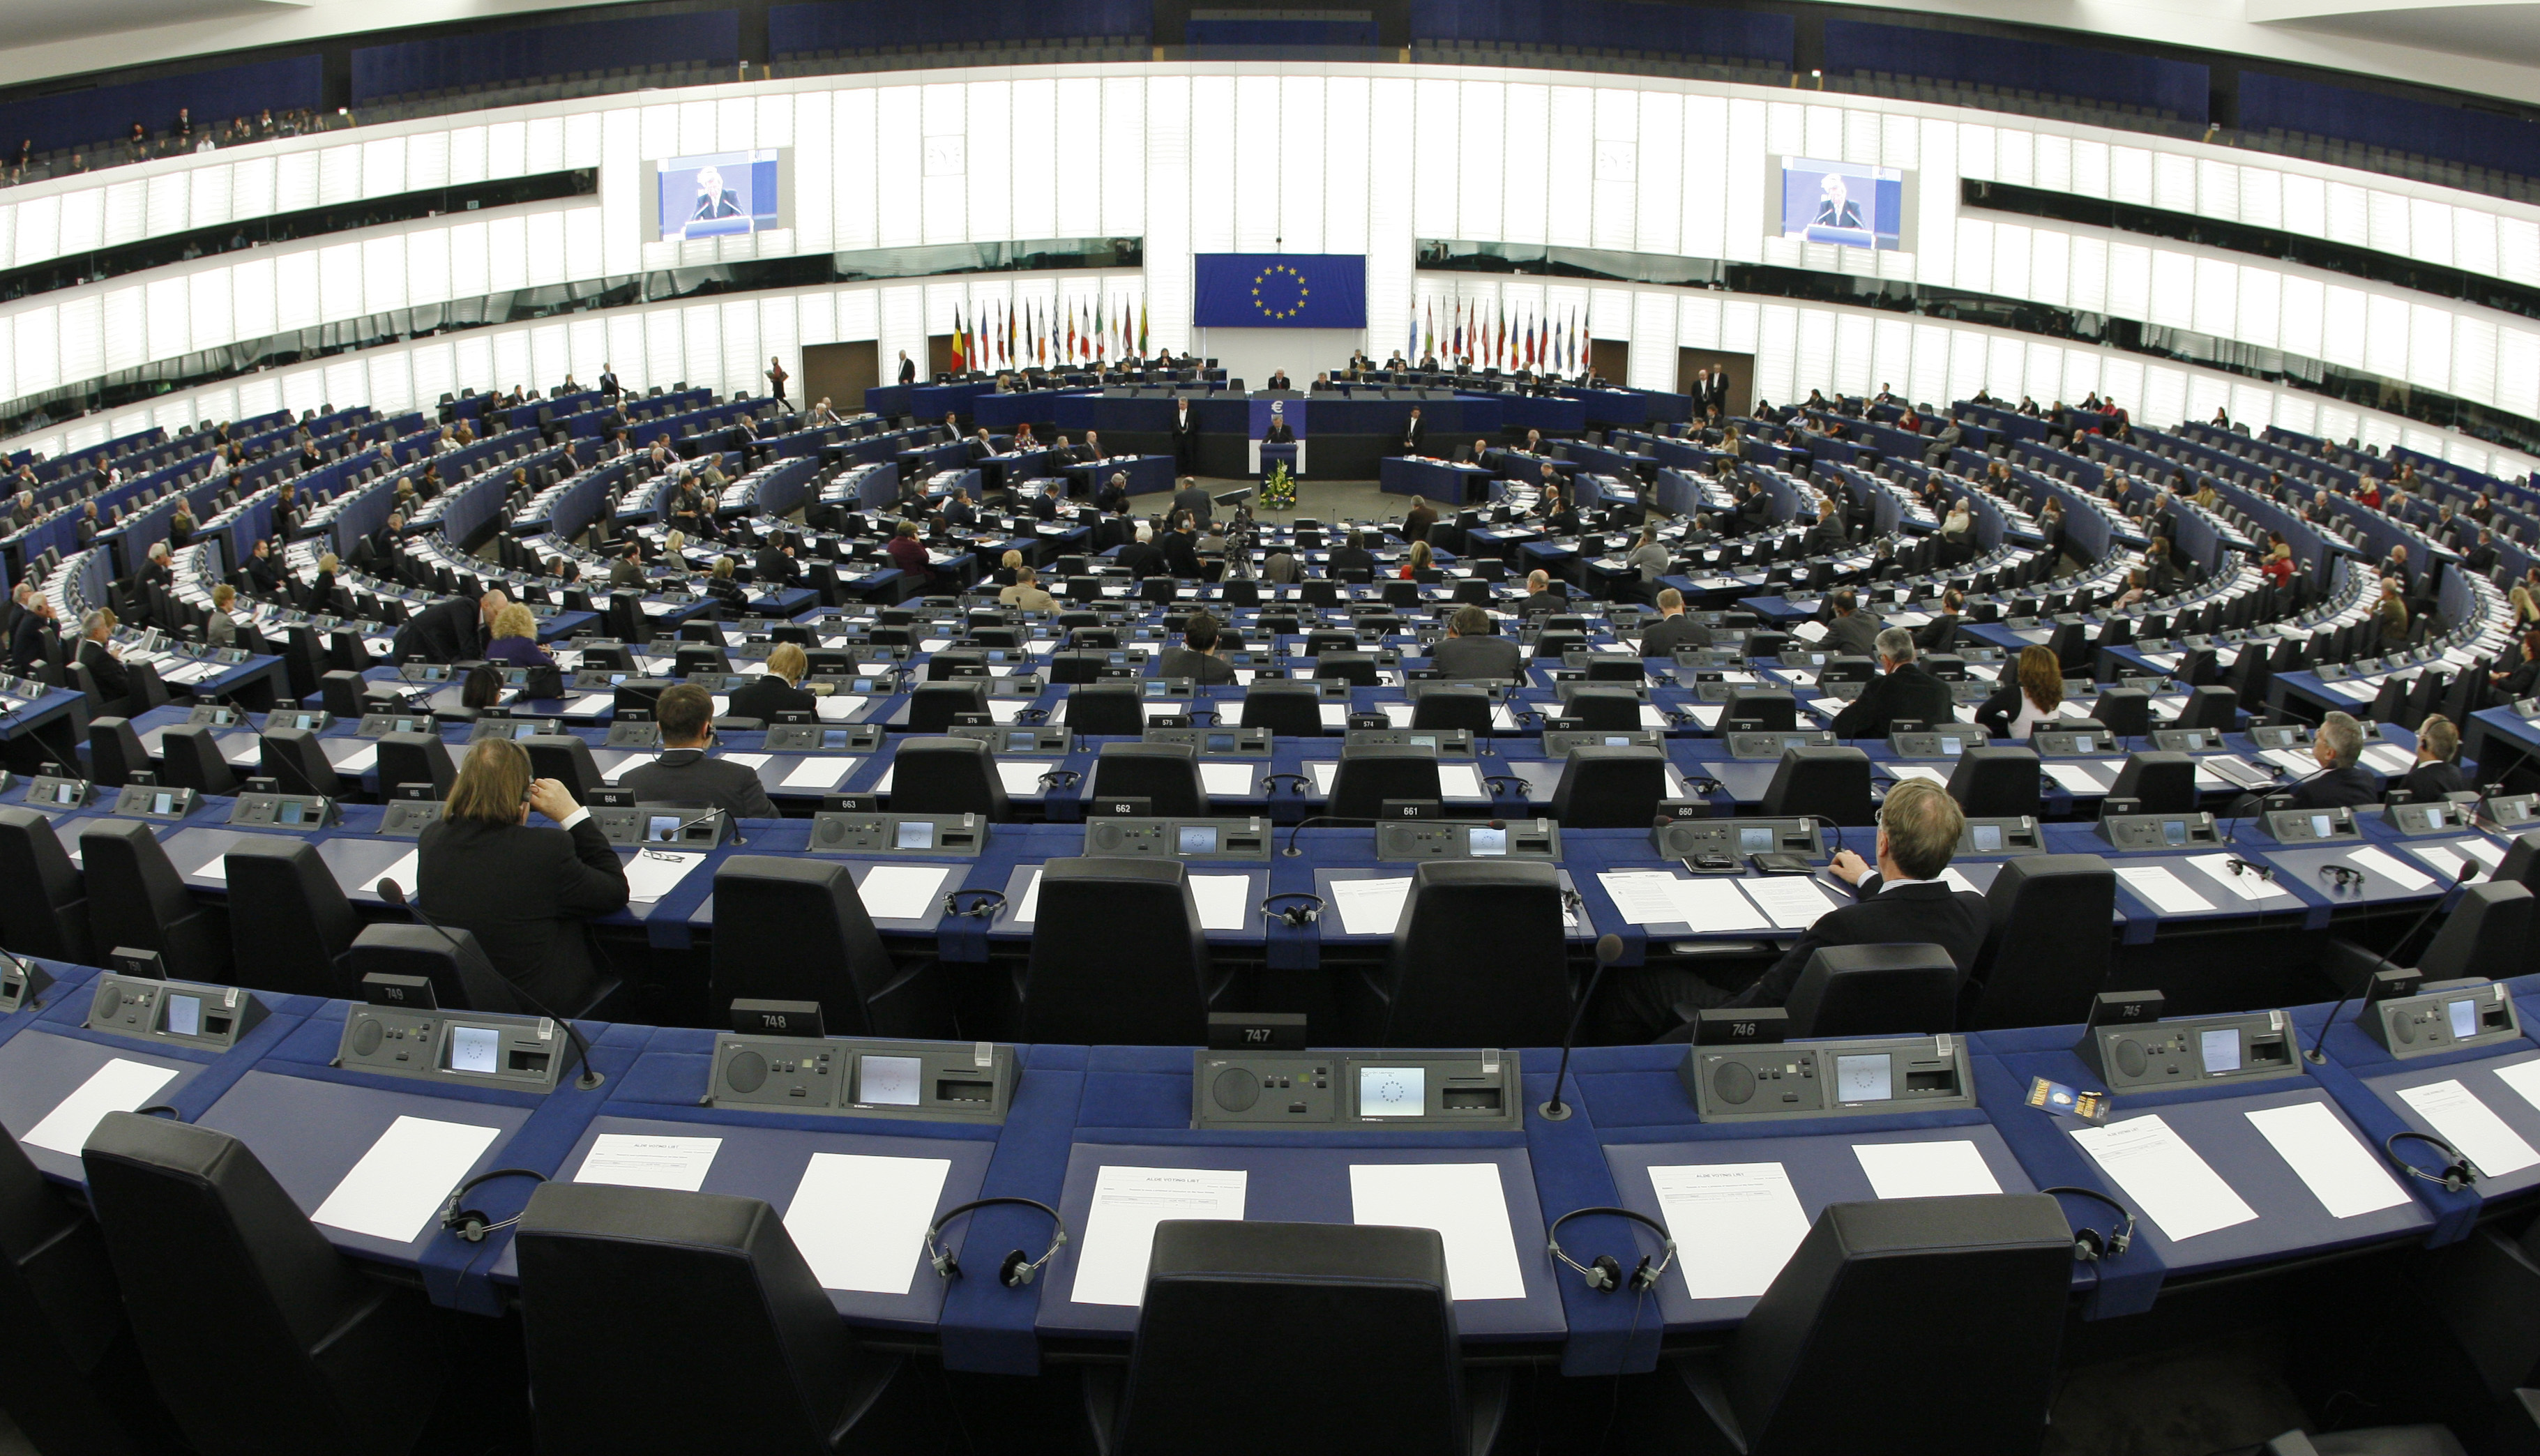 élections européennes : pourquoi il ne faut pas mettre tous les eurosceptiques dans le même camp